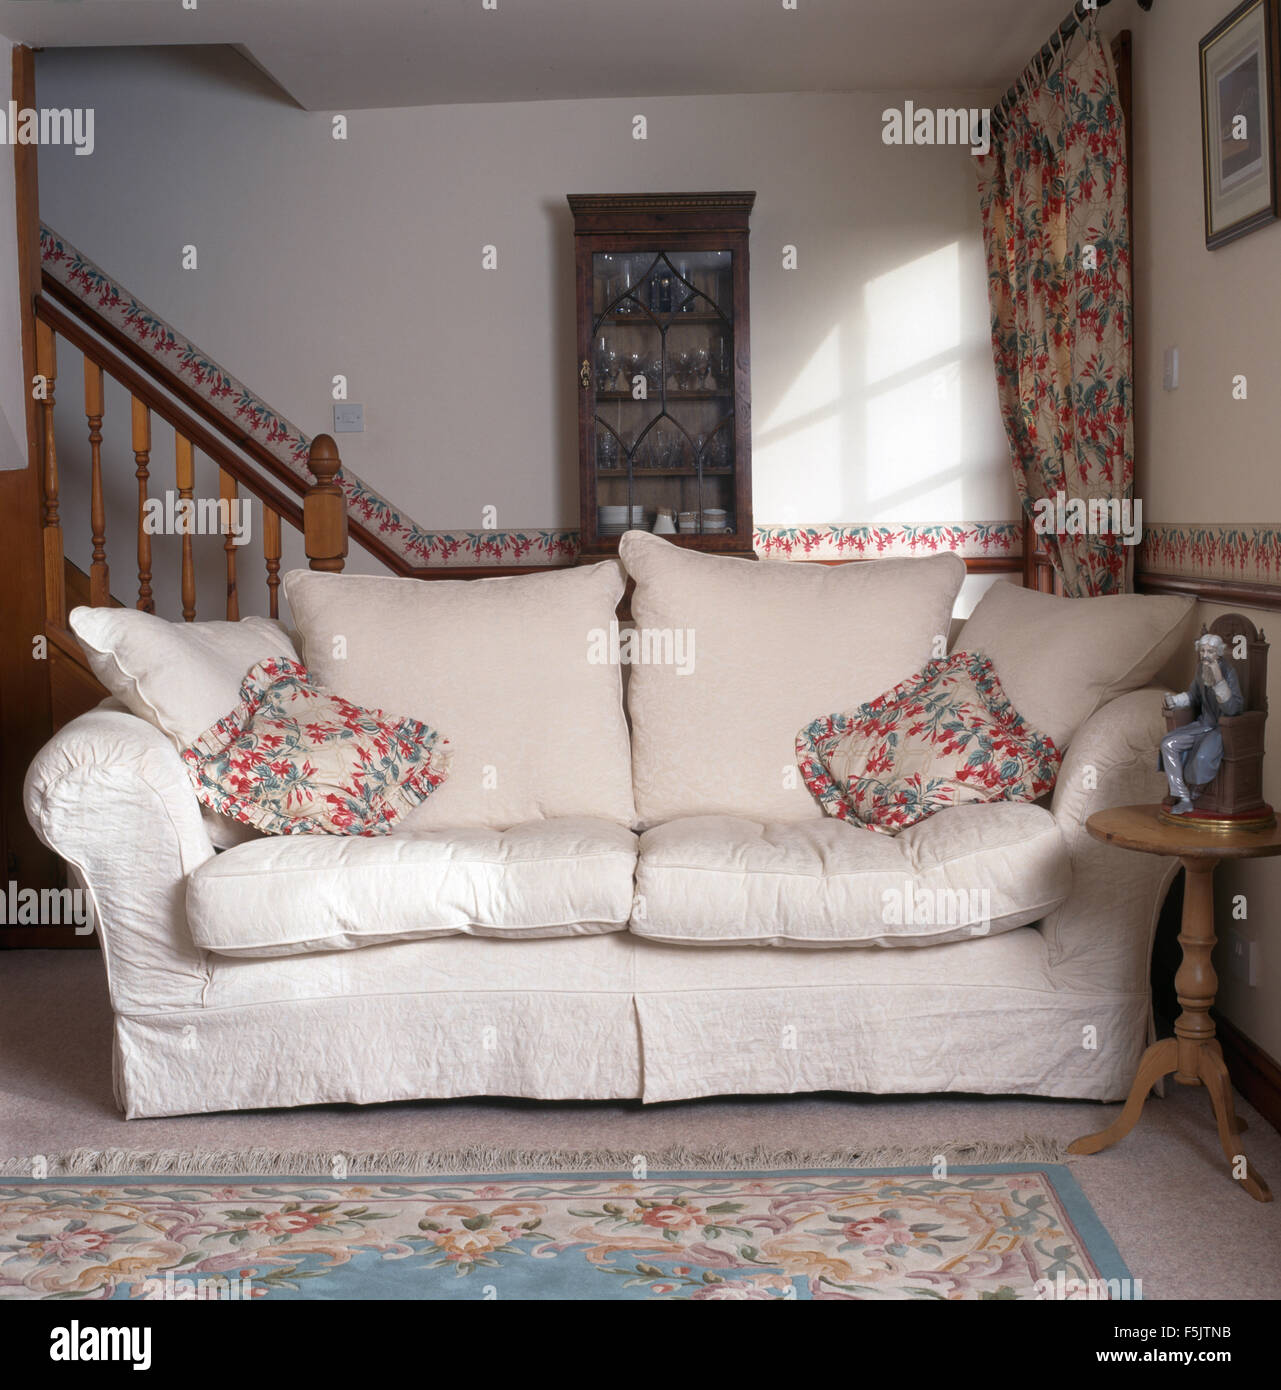 Cuscini floreali e bianco coperchio allentato su un divano in una piccola degli anni novanta soggiorno Foto Stock